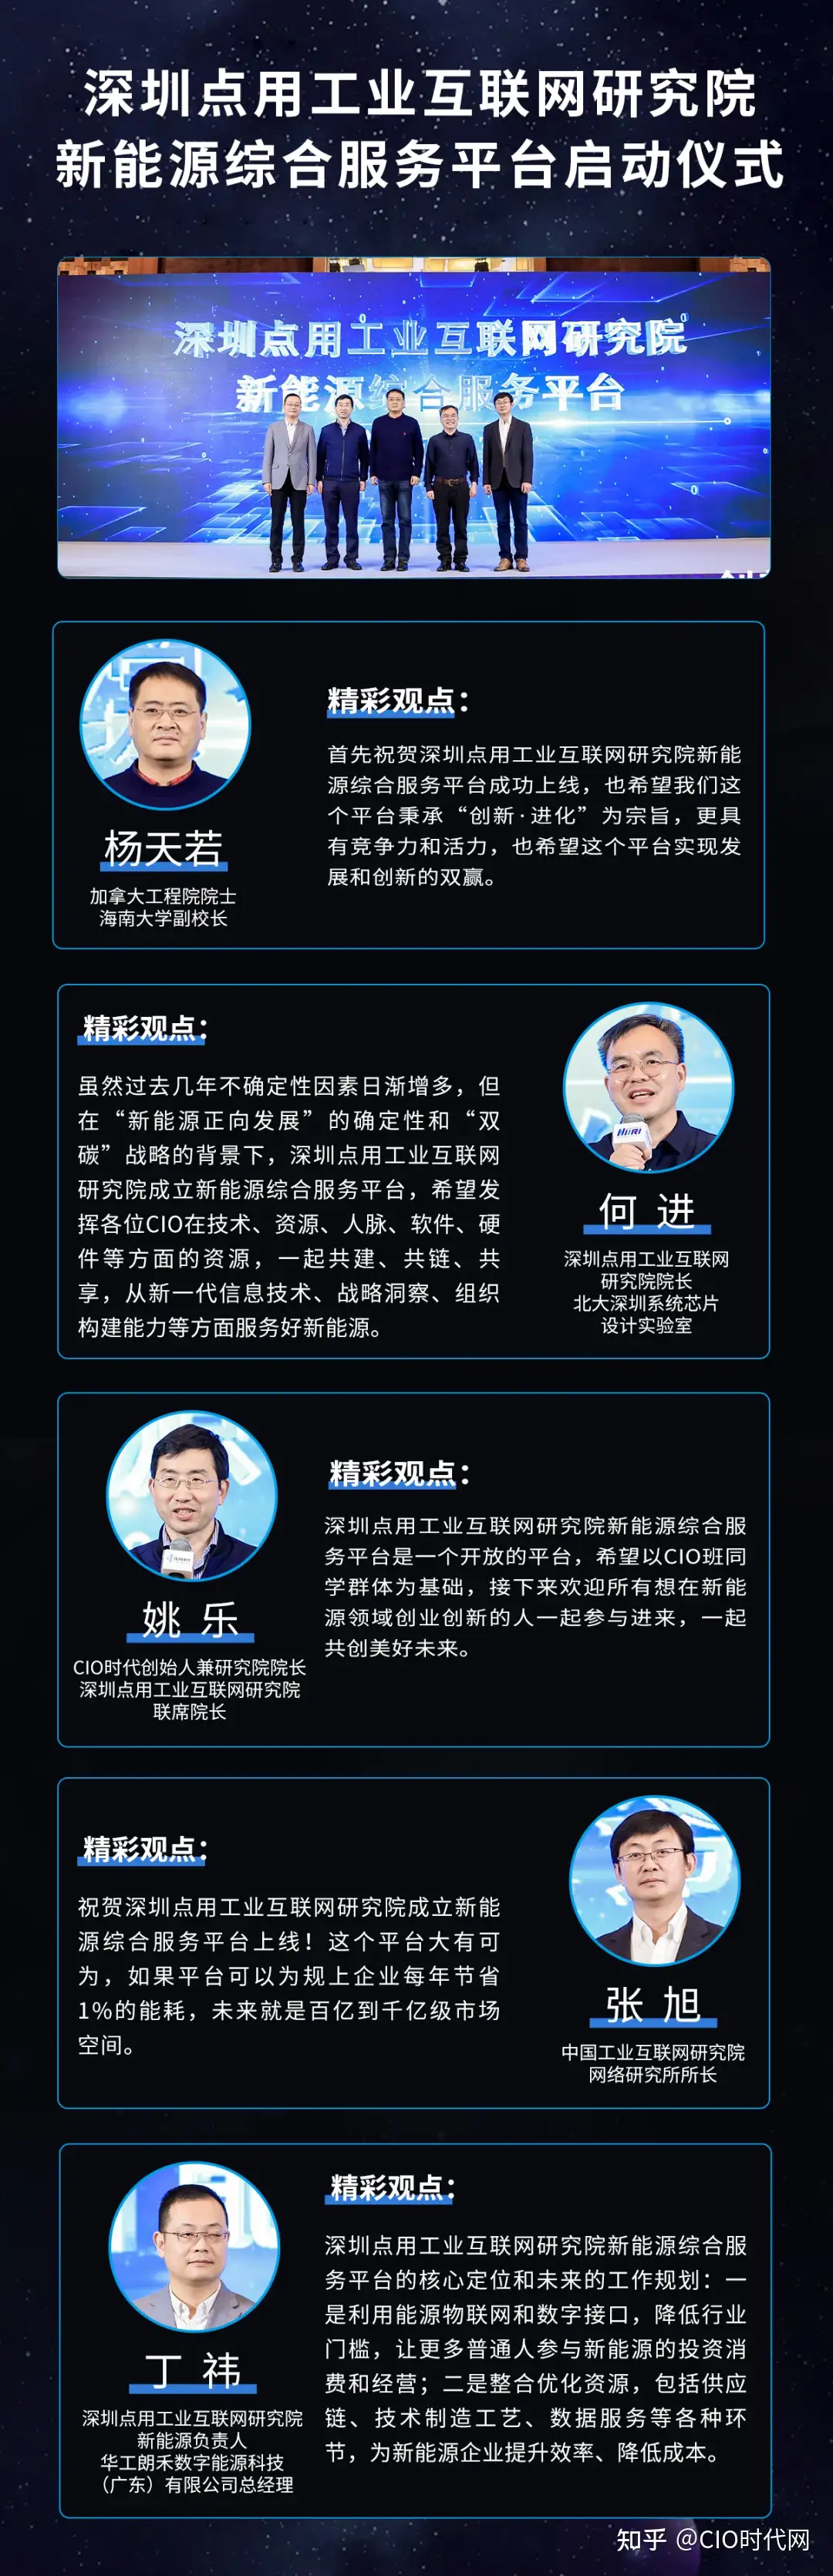 第二届中国行业数字化转型高峰论坛暨华南CIO年会成功举办